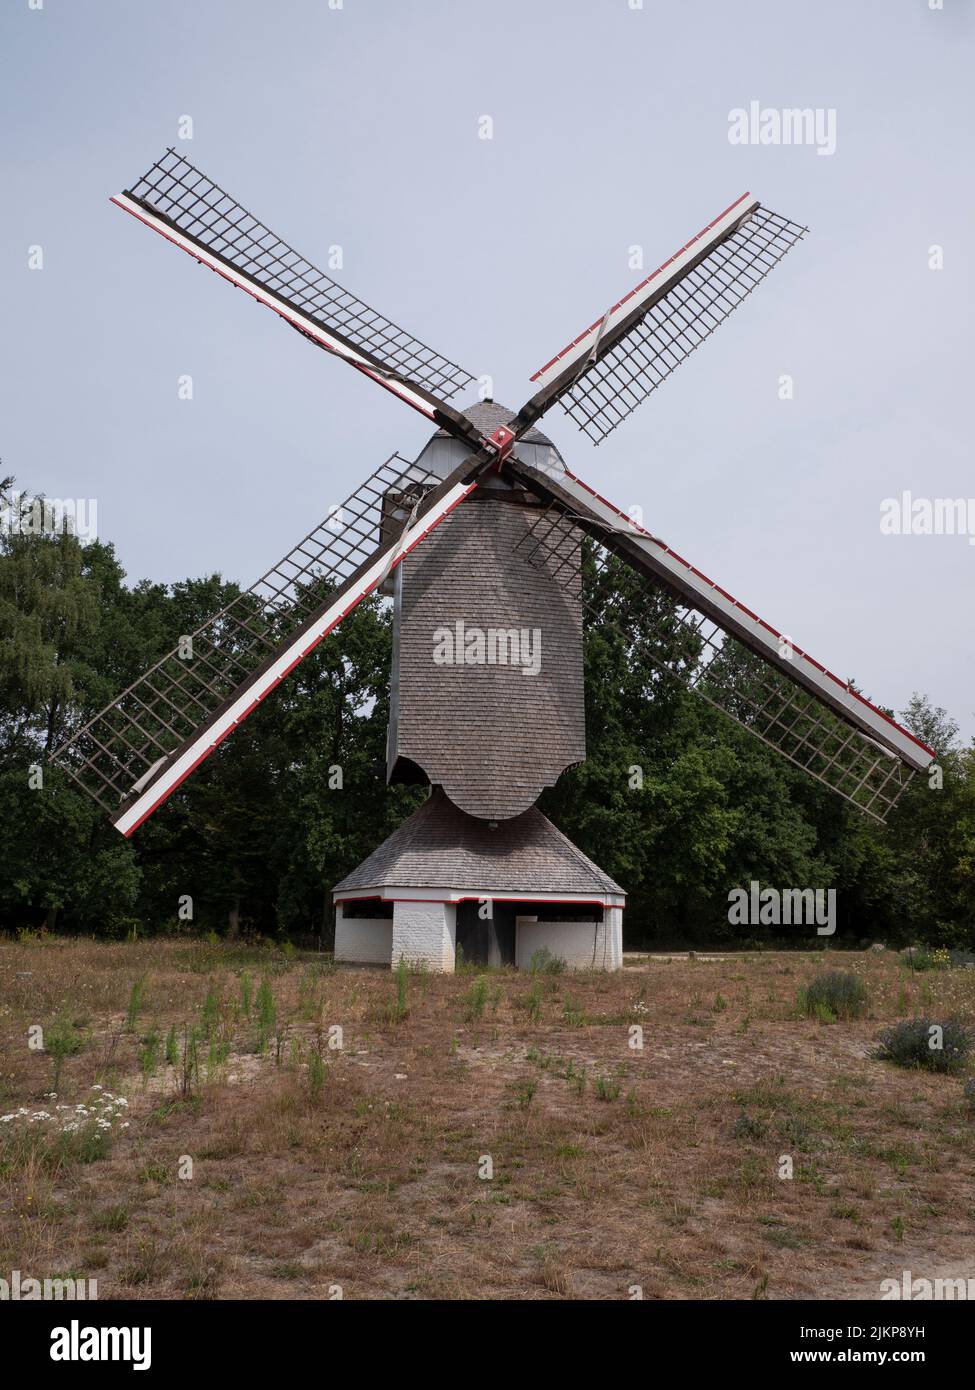 Très ancien moulin à vent de Millegem, construit en 1800 et à admirer à Bokrijk, Belgique Banque D'Images